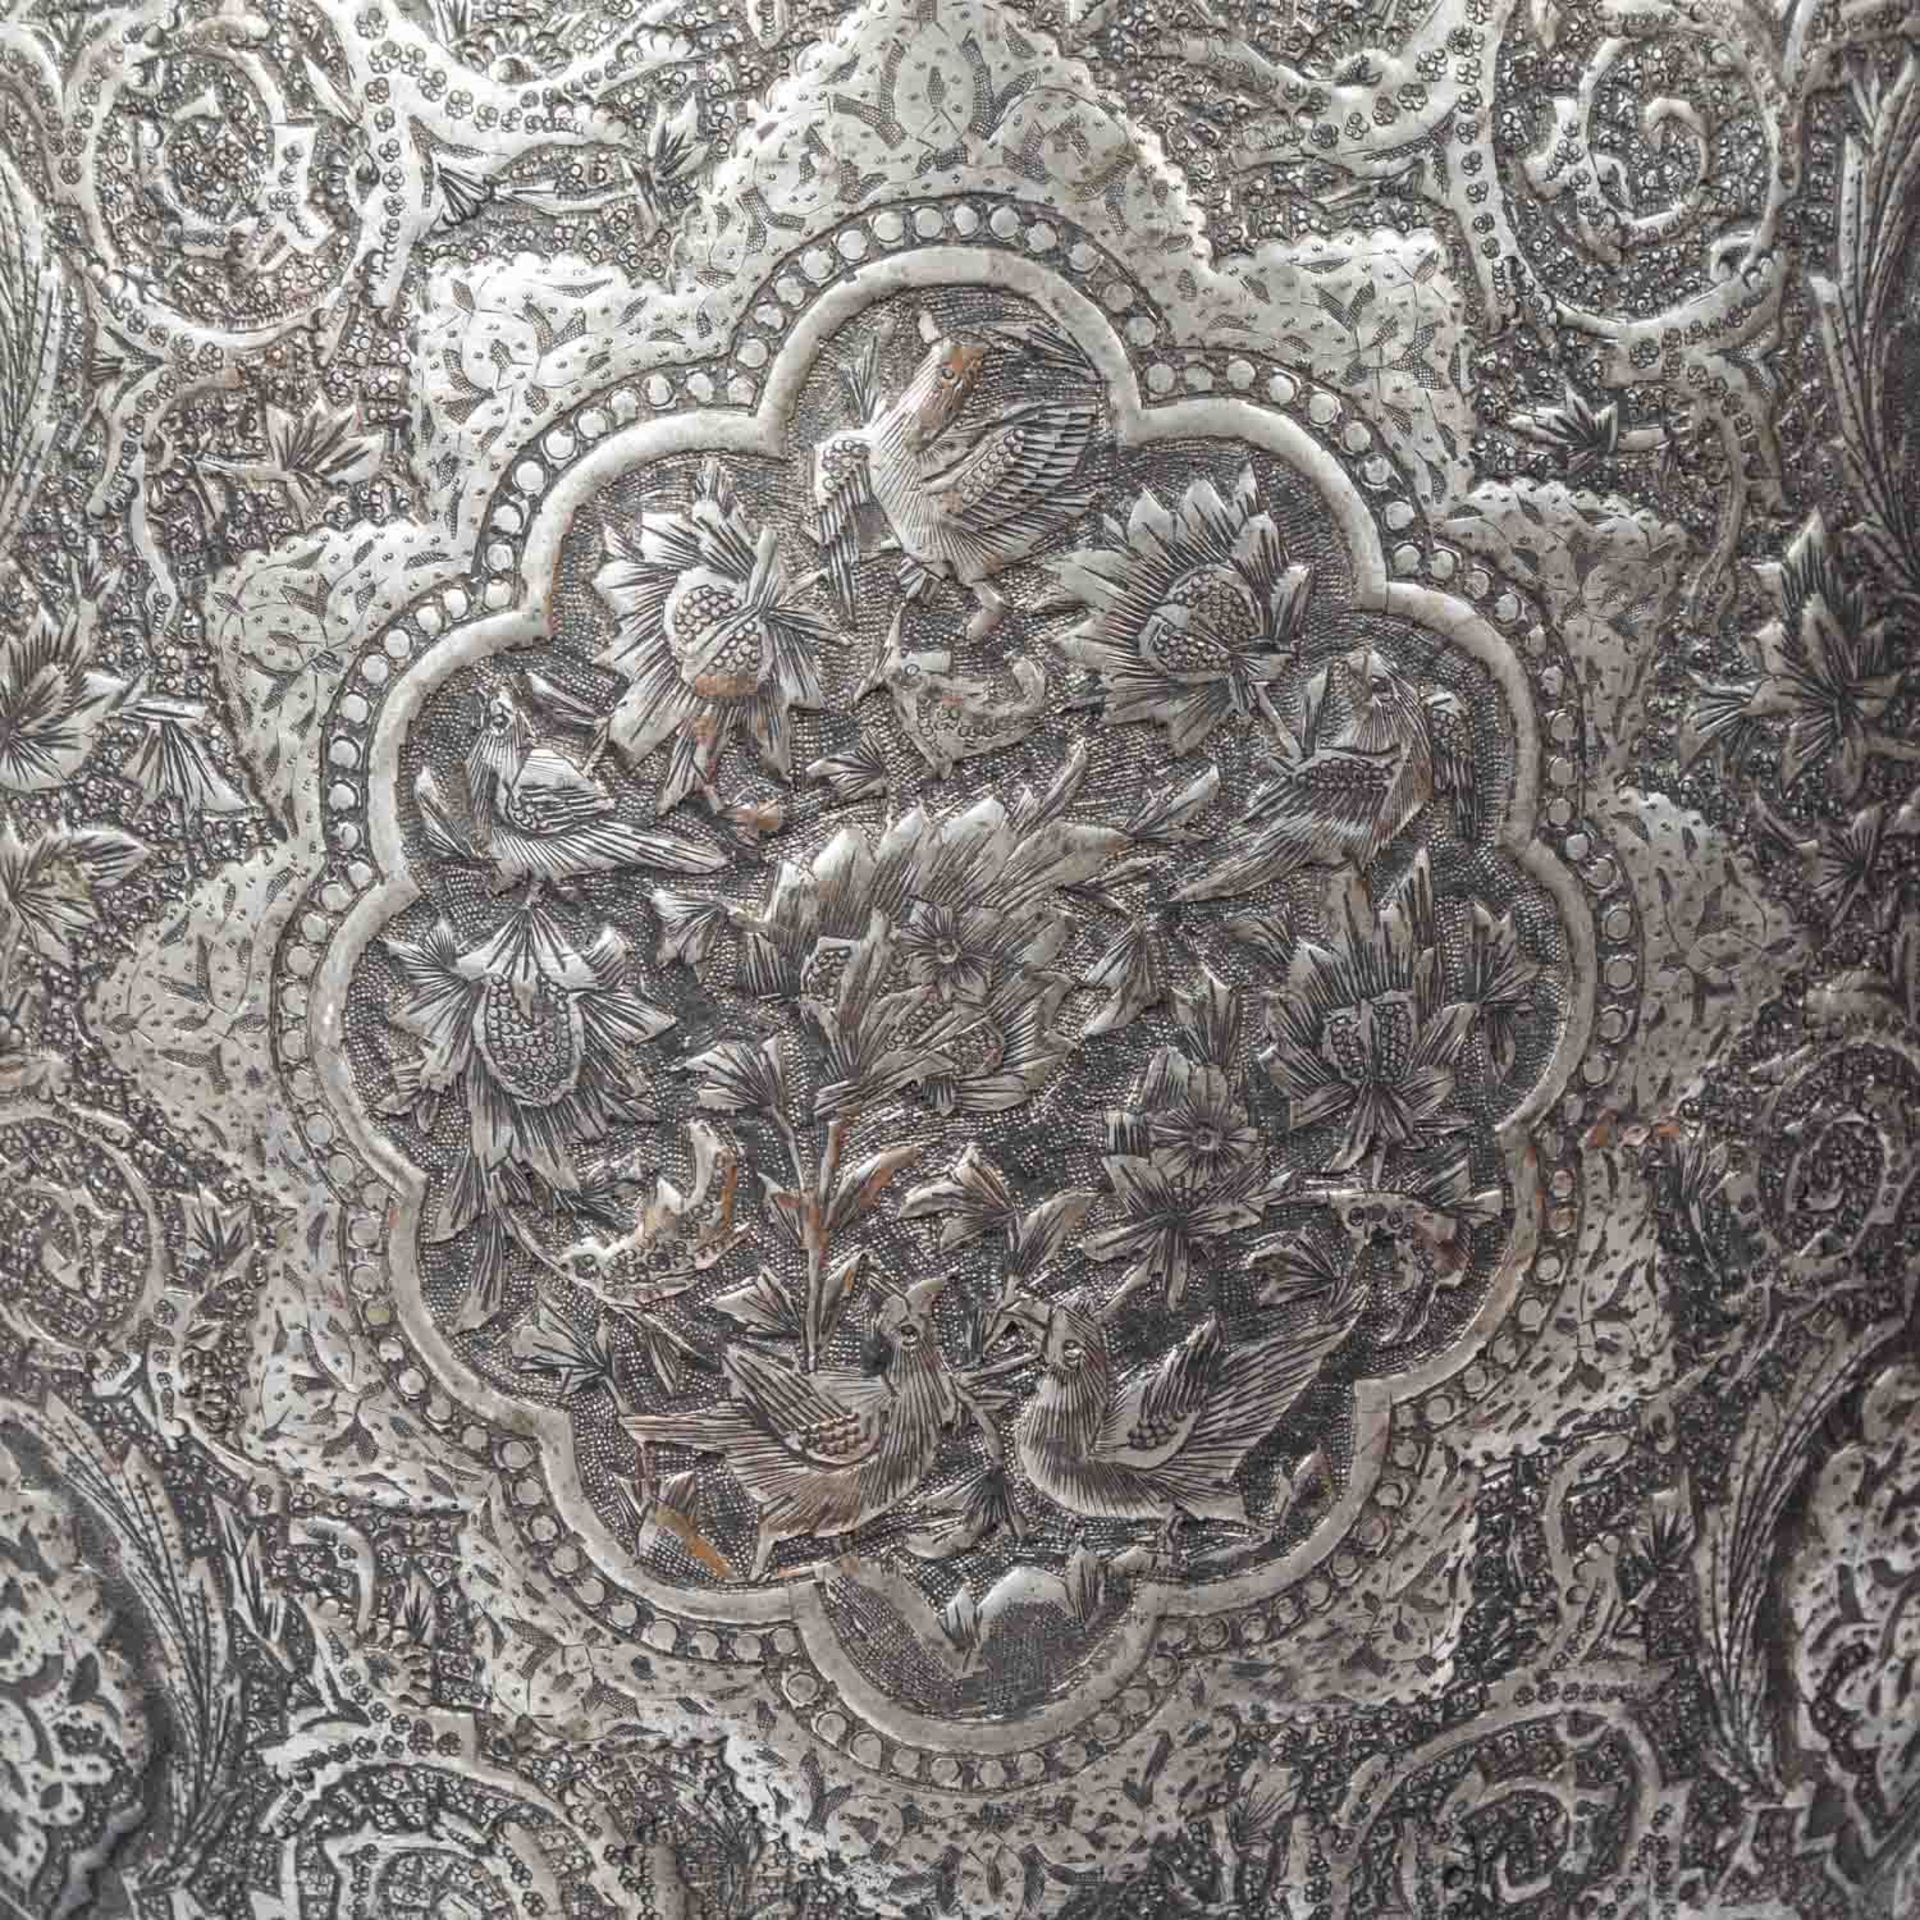 Monumentale Vase aus Metall. PERSIEN, 1. Hälfte 20. Jh..Ornamental und mit figürlichen Szenen in - Image 9 of 10